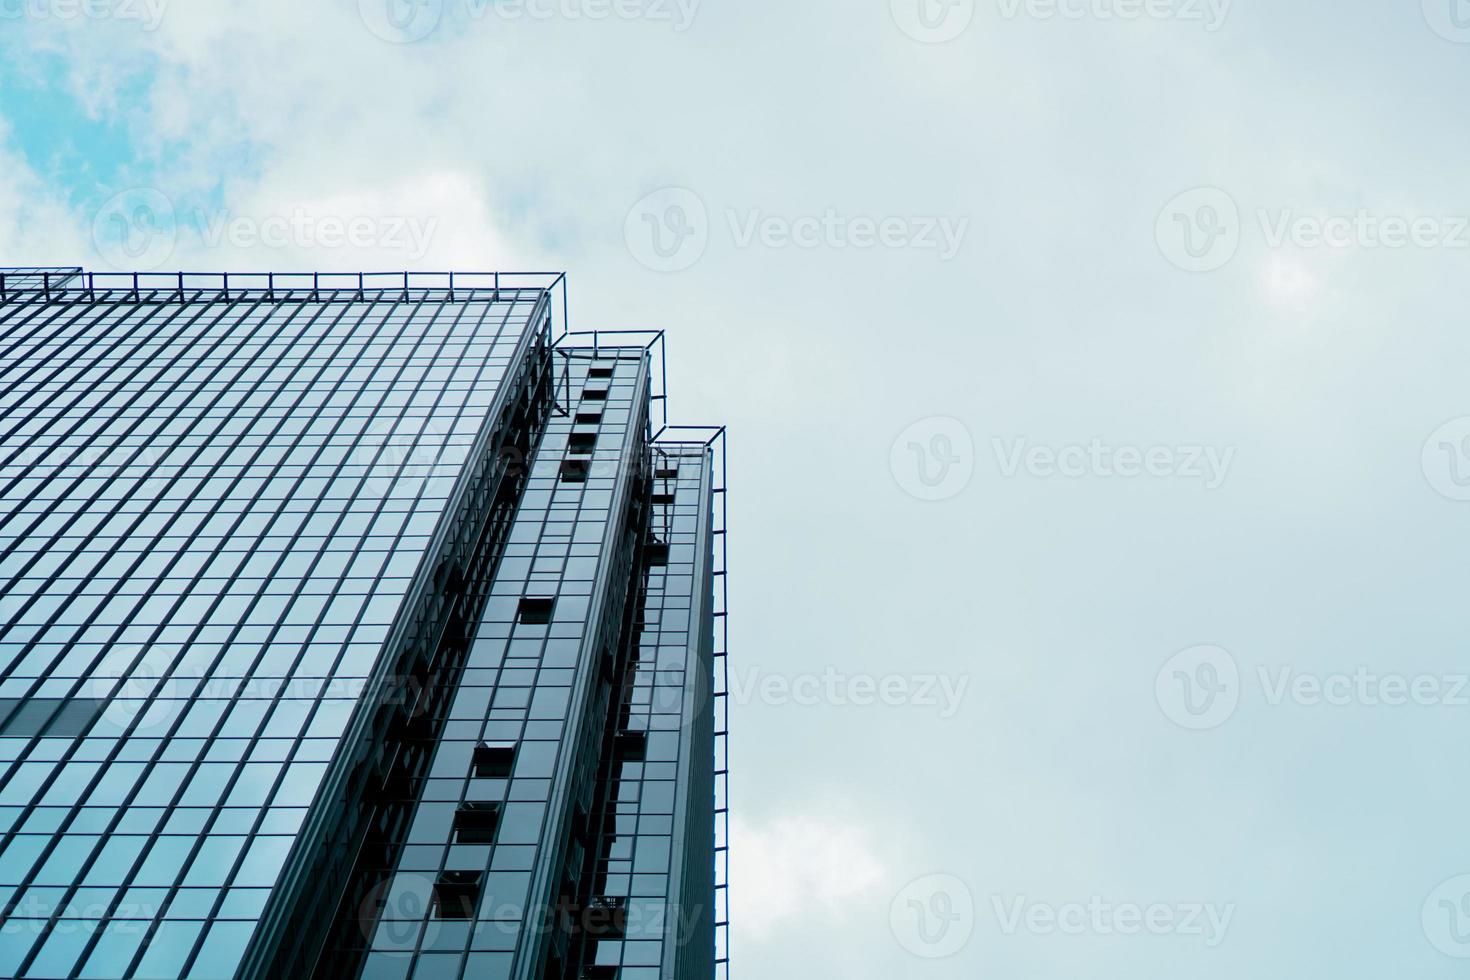 wolkenkrabber en toren van zakencentrum, bedrijfsconcept. foto